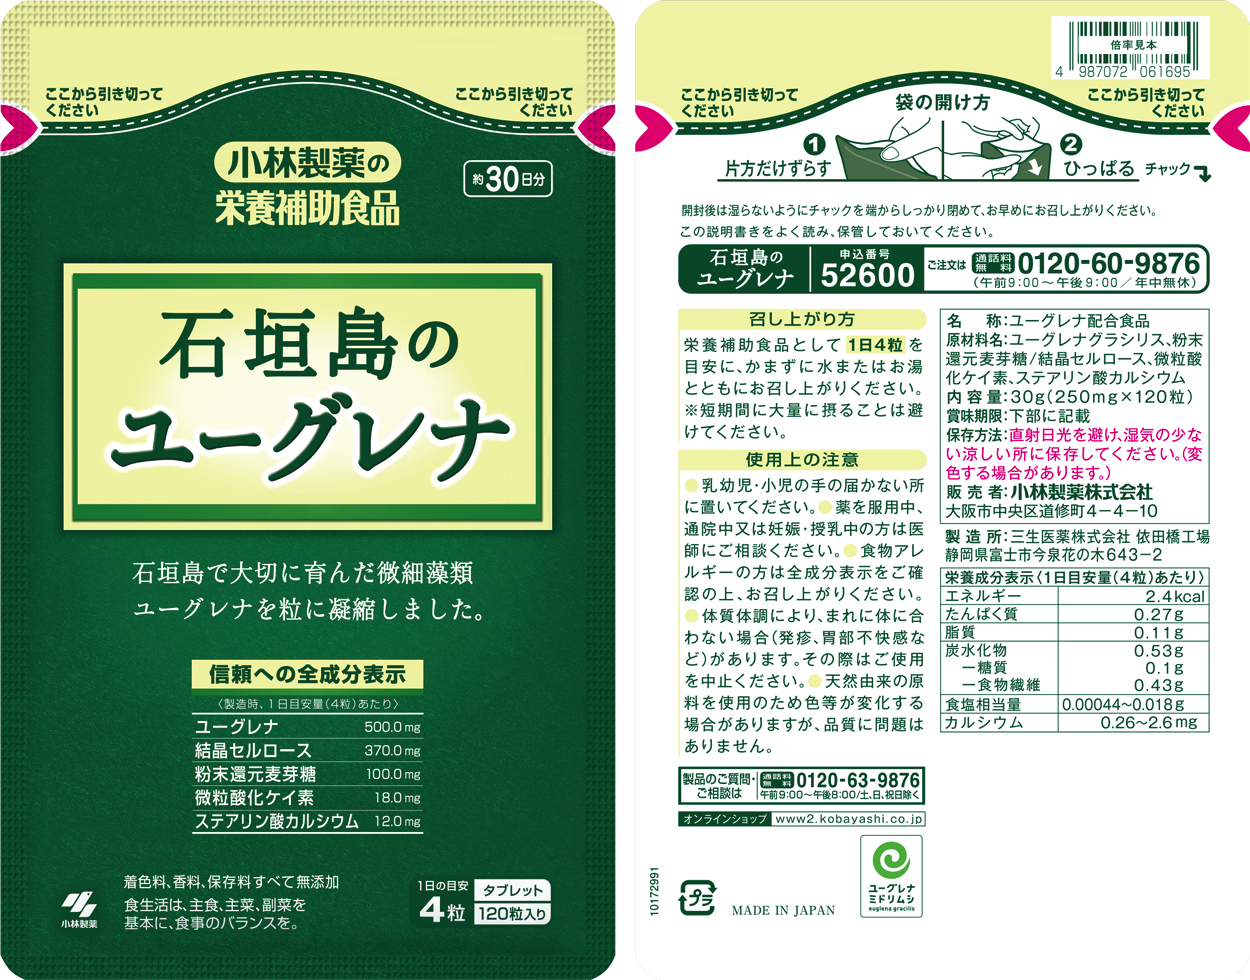 石垣島のユーグレナ | 小林製薬の通販(健康食品・サプリメント)